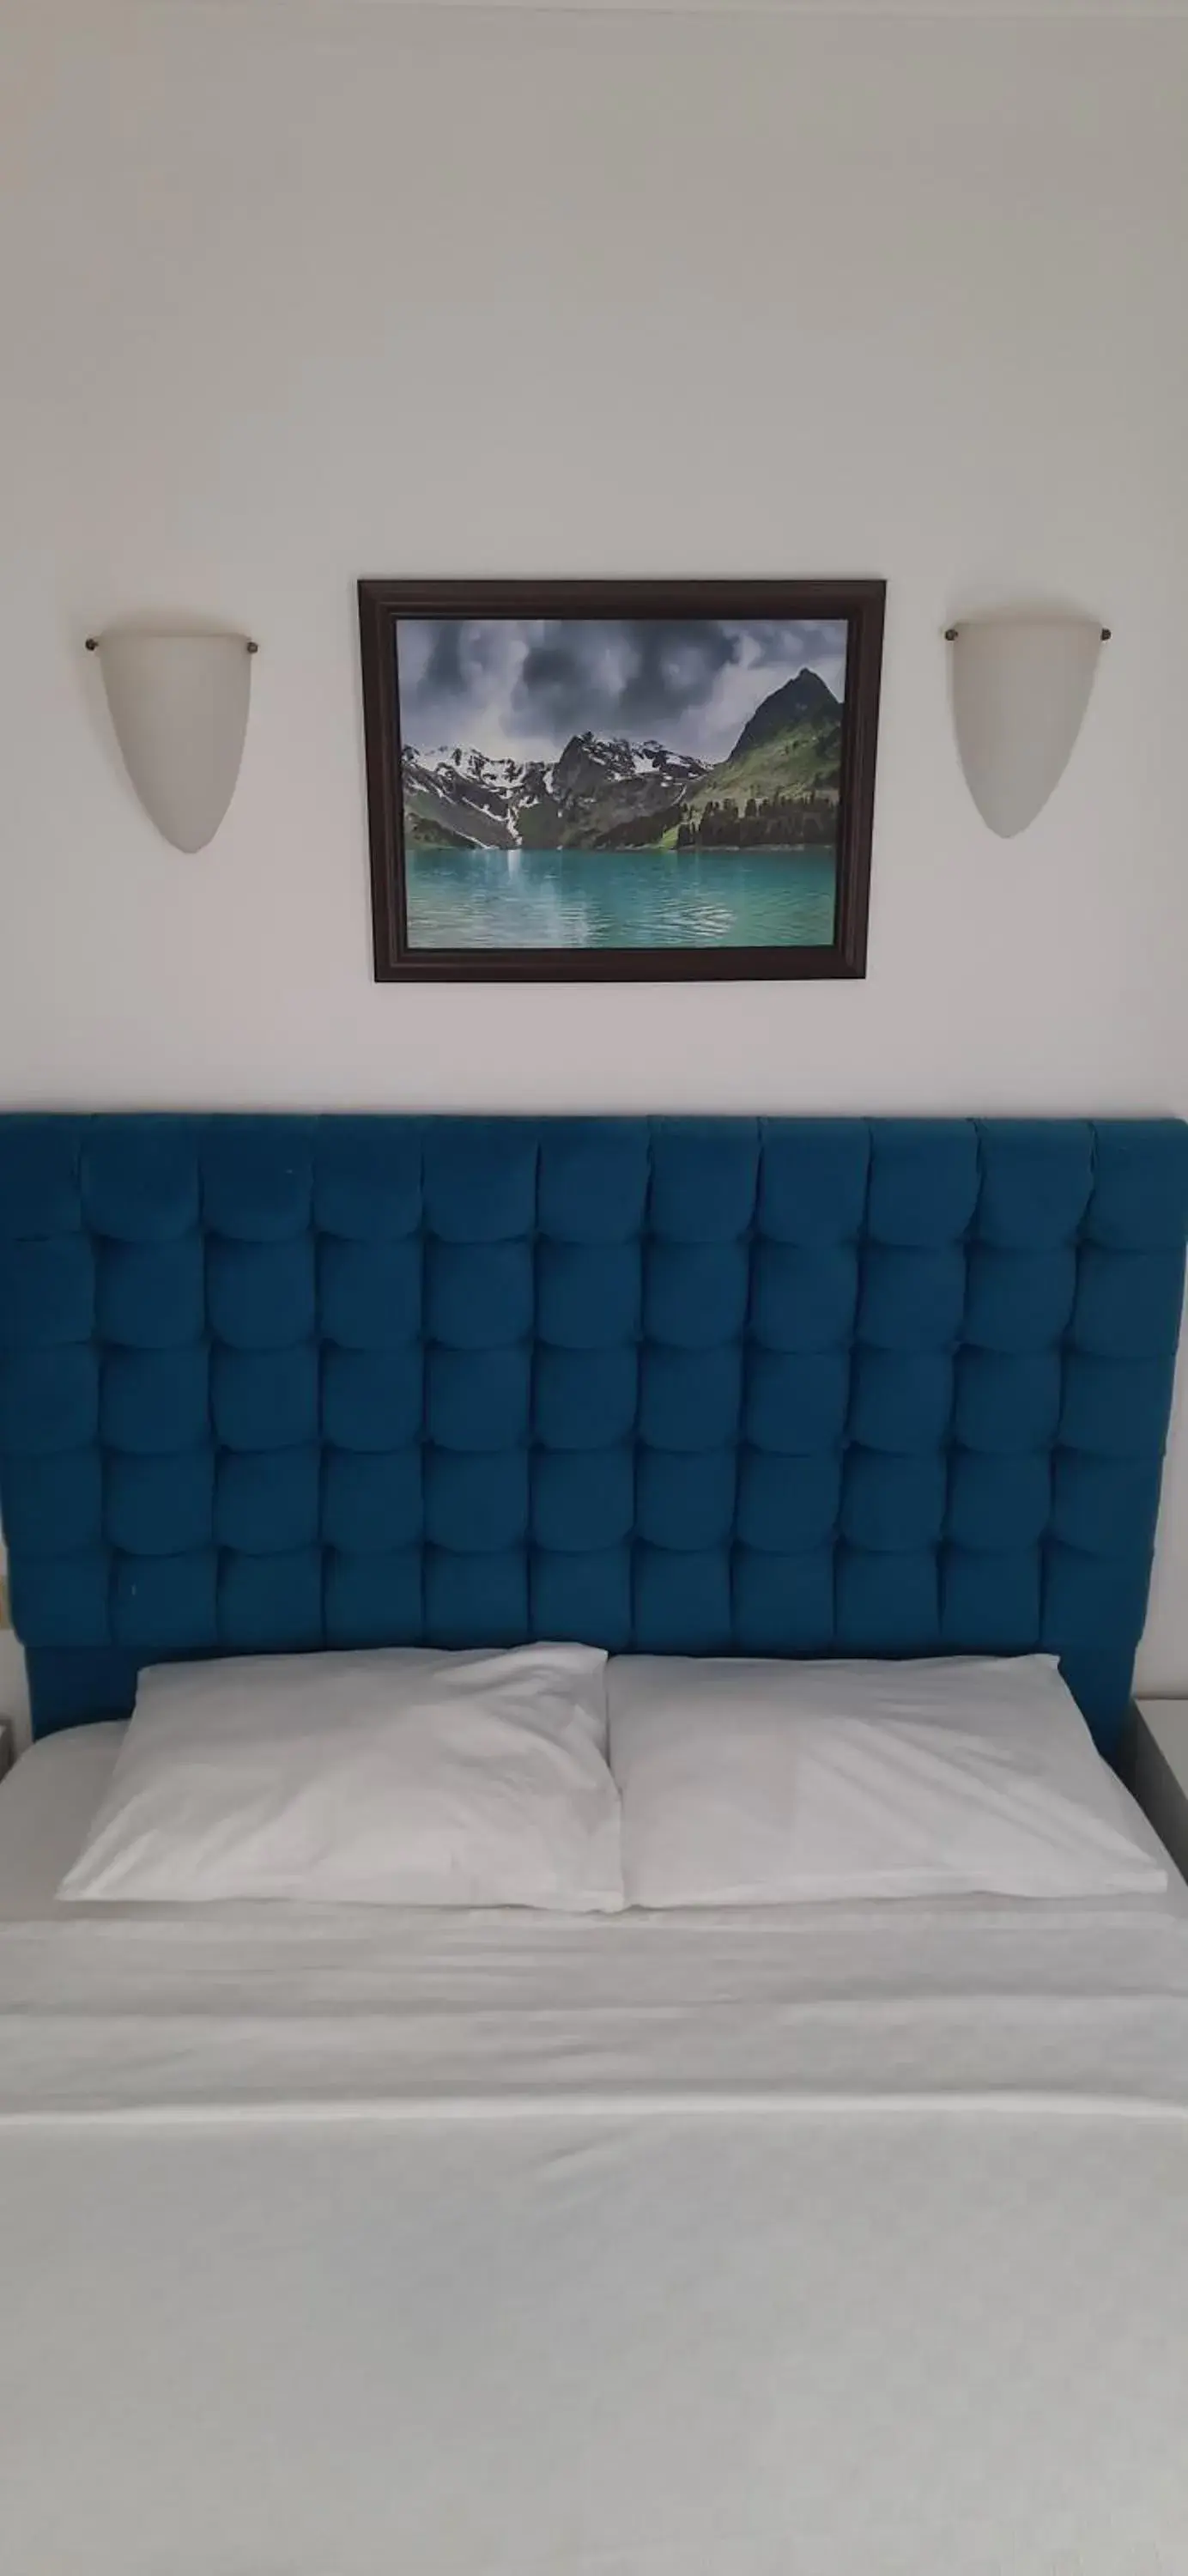 Bed in Hotel Nova